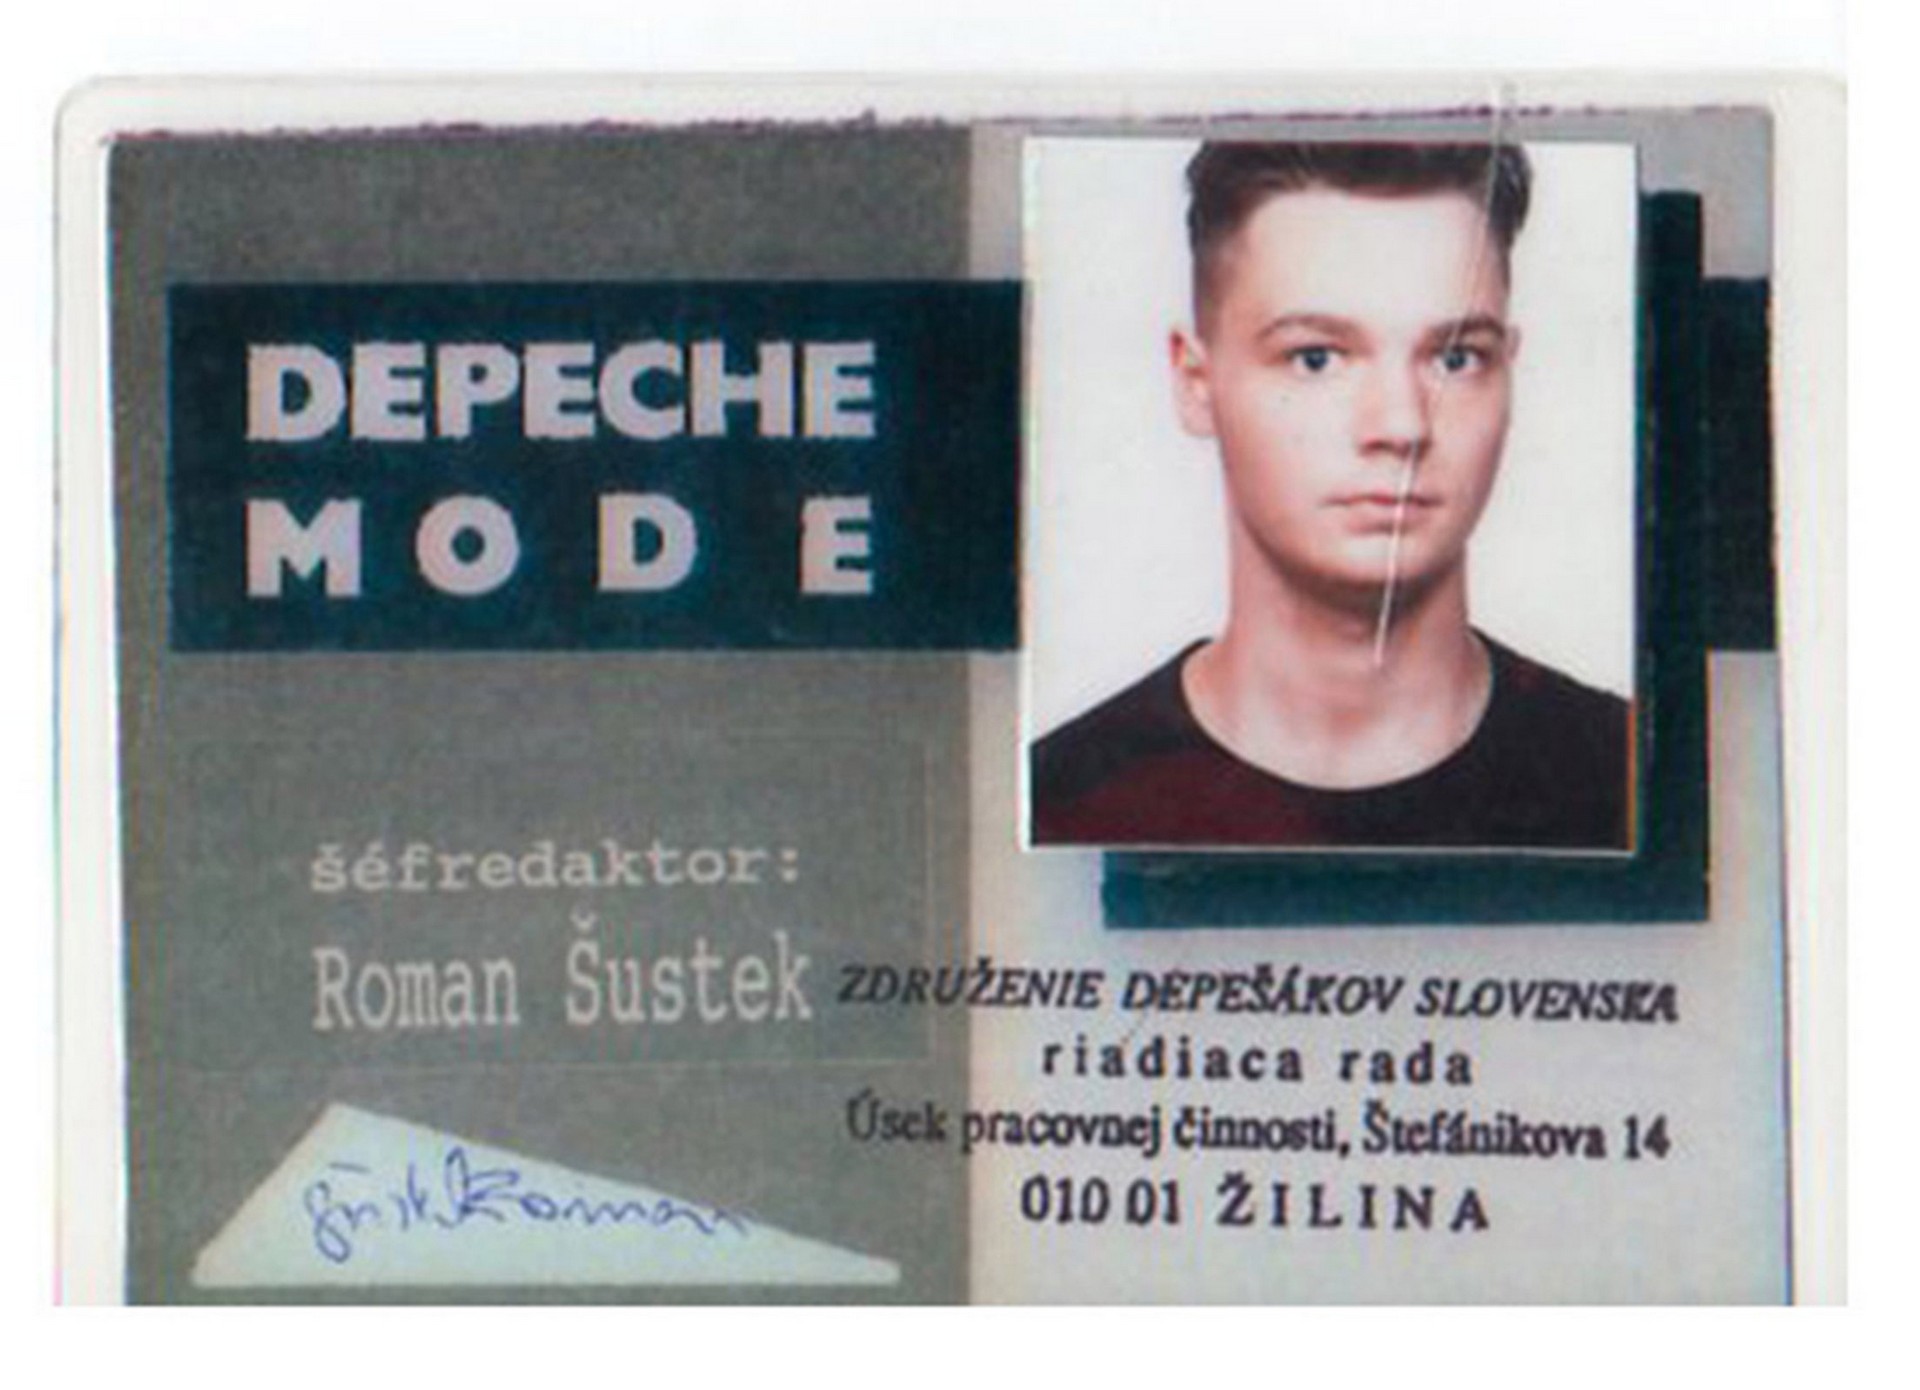 art_history_1992_depeche_mode_friends